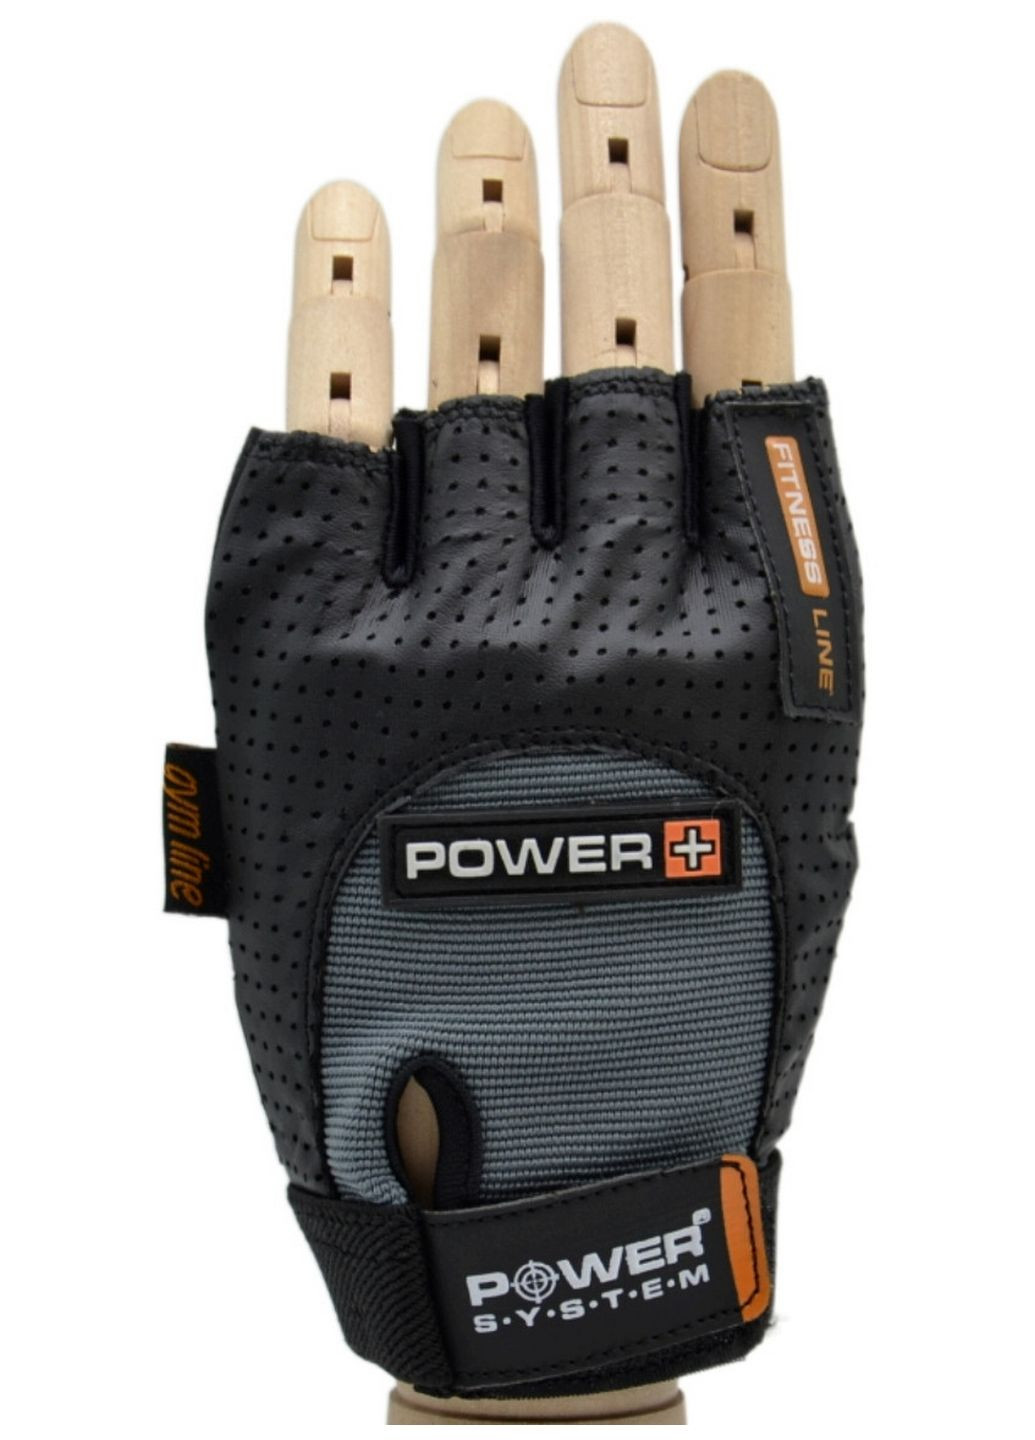 Перчатки для фитнеса power plus Power System (282588148)